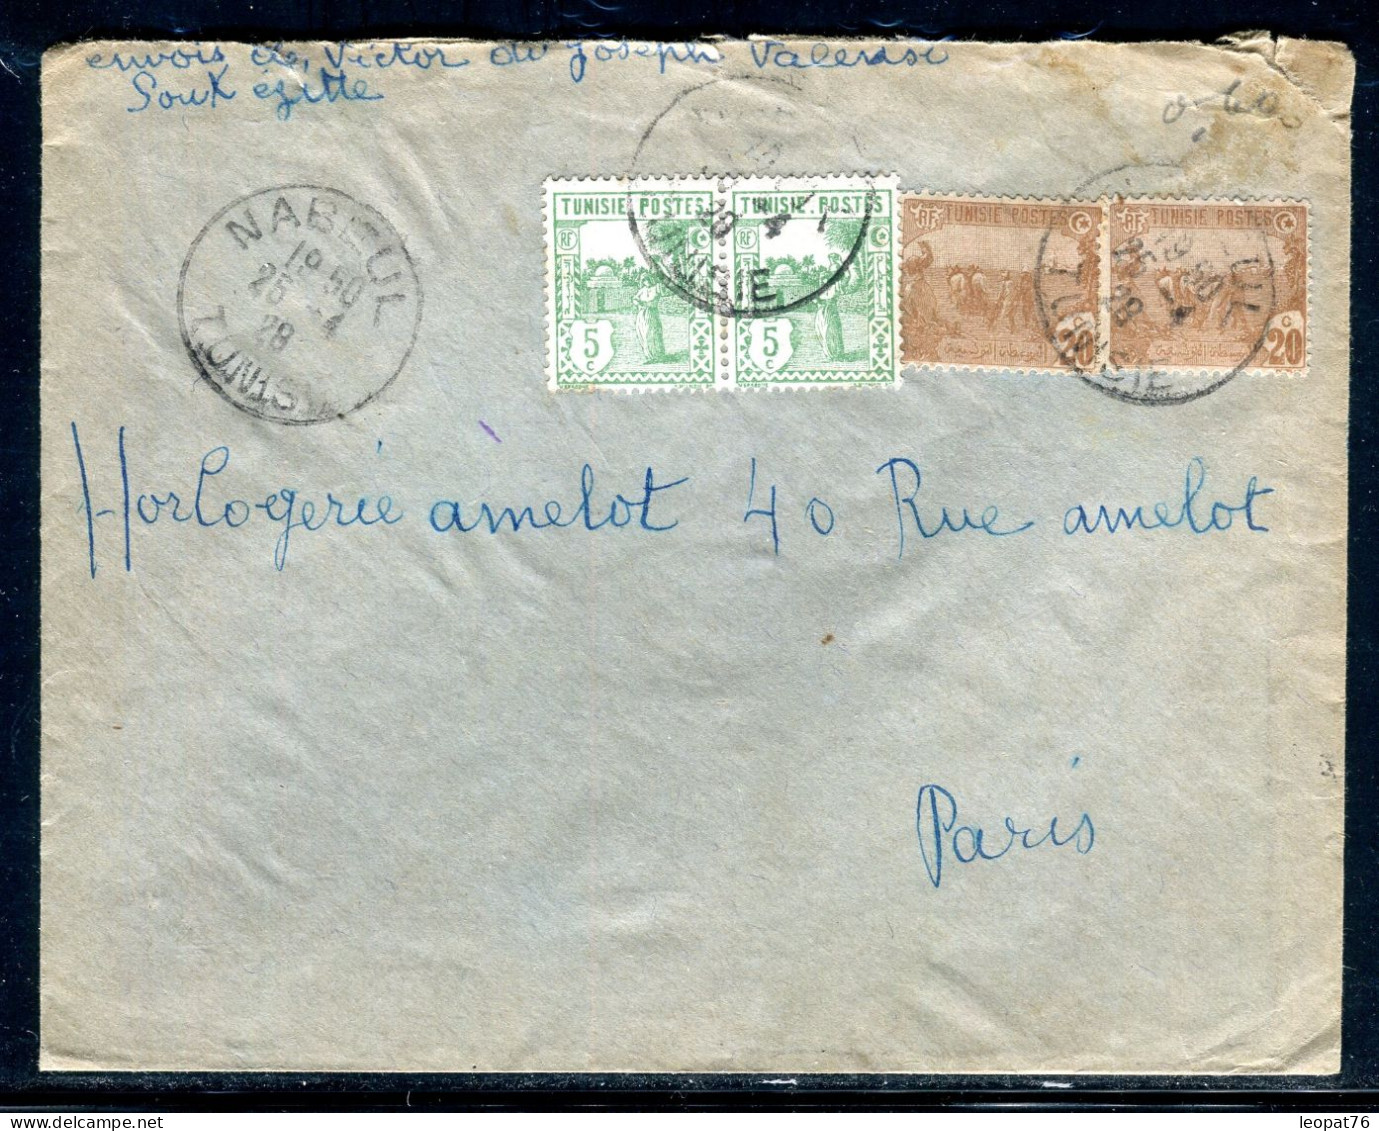 Tunisie - Enveloppe De Nabeul Pour Paris En Paris En 1928 - Référence  A 39 - Lettres & Documents